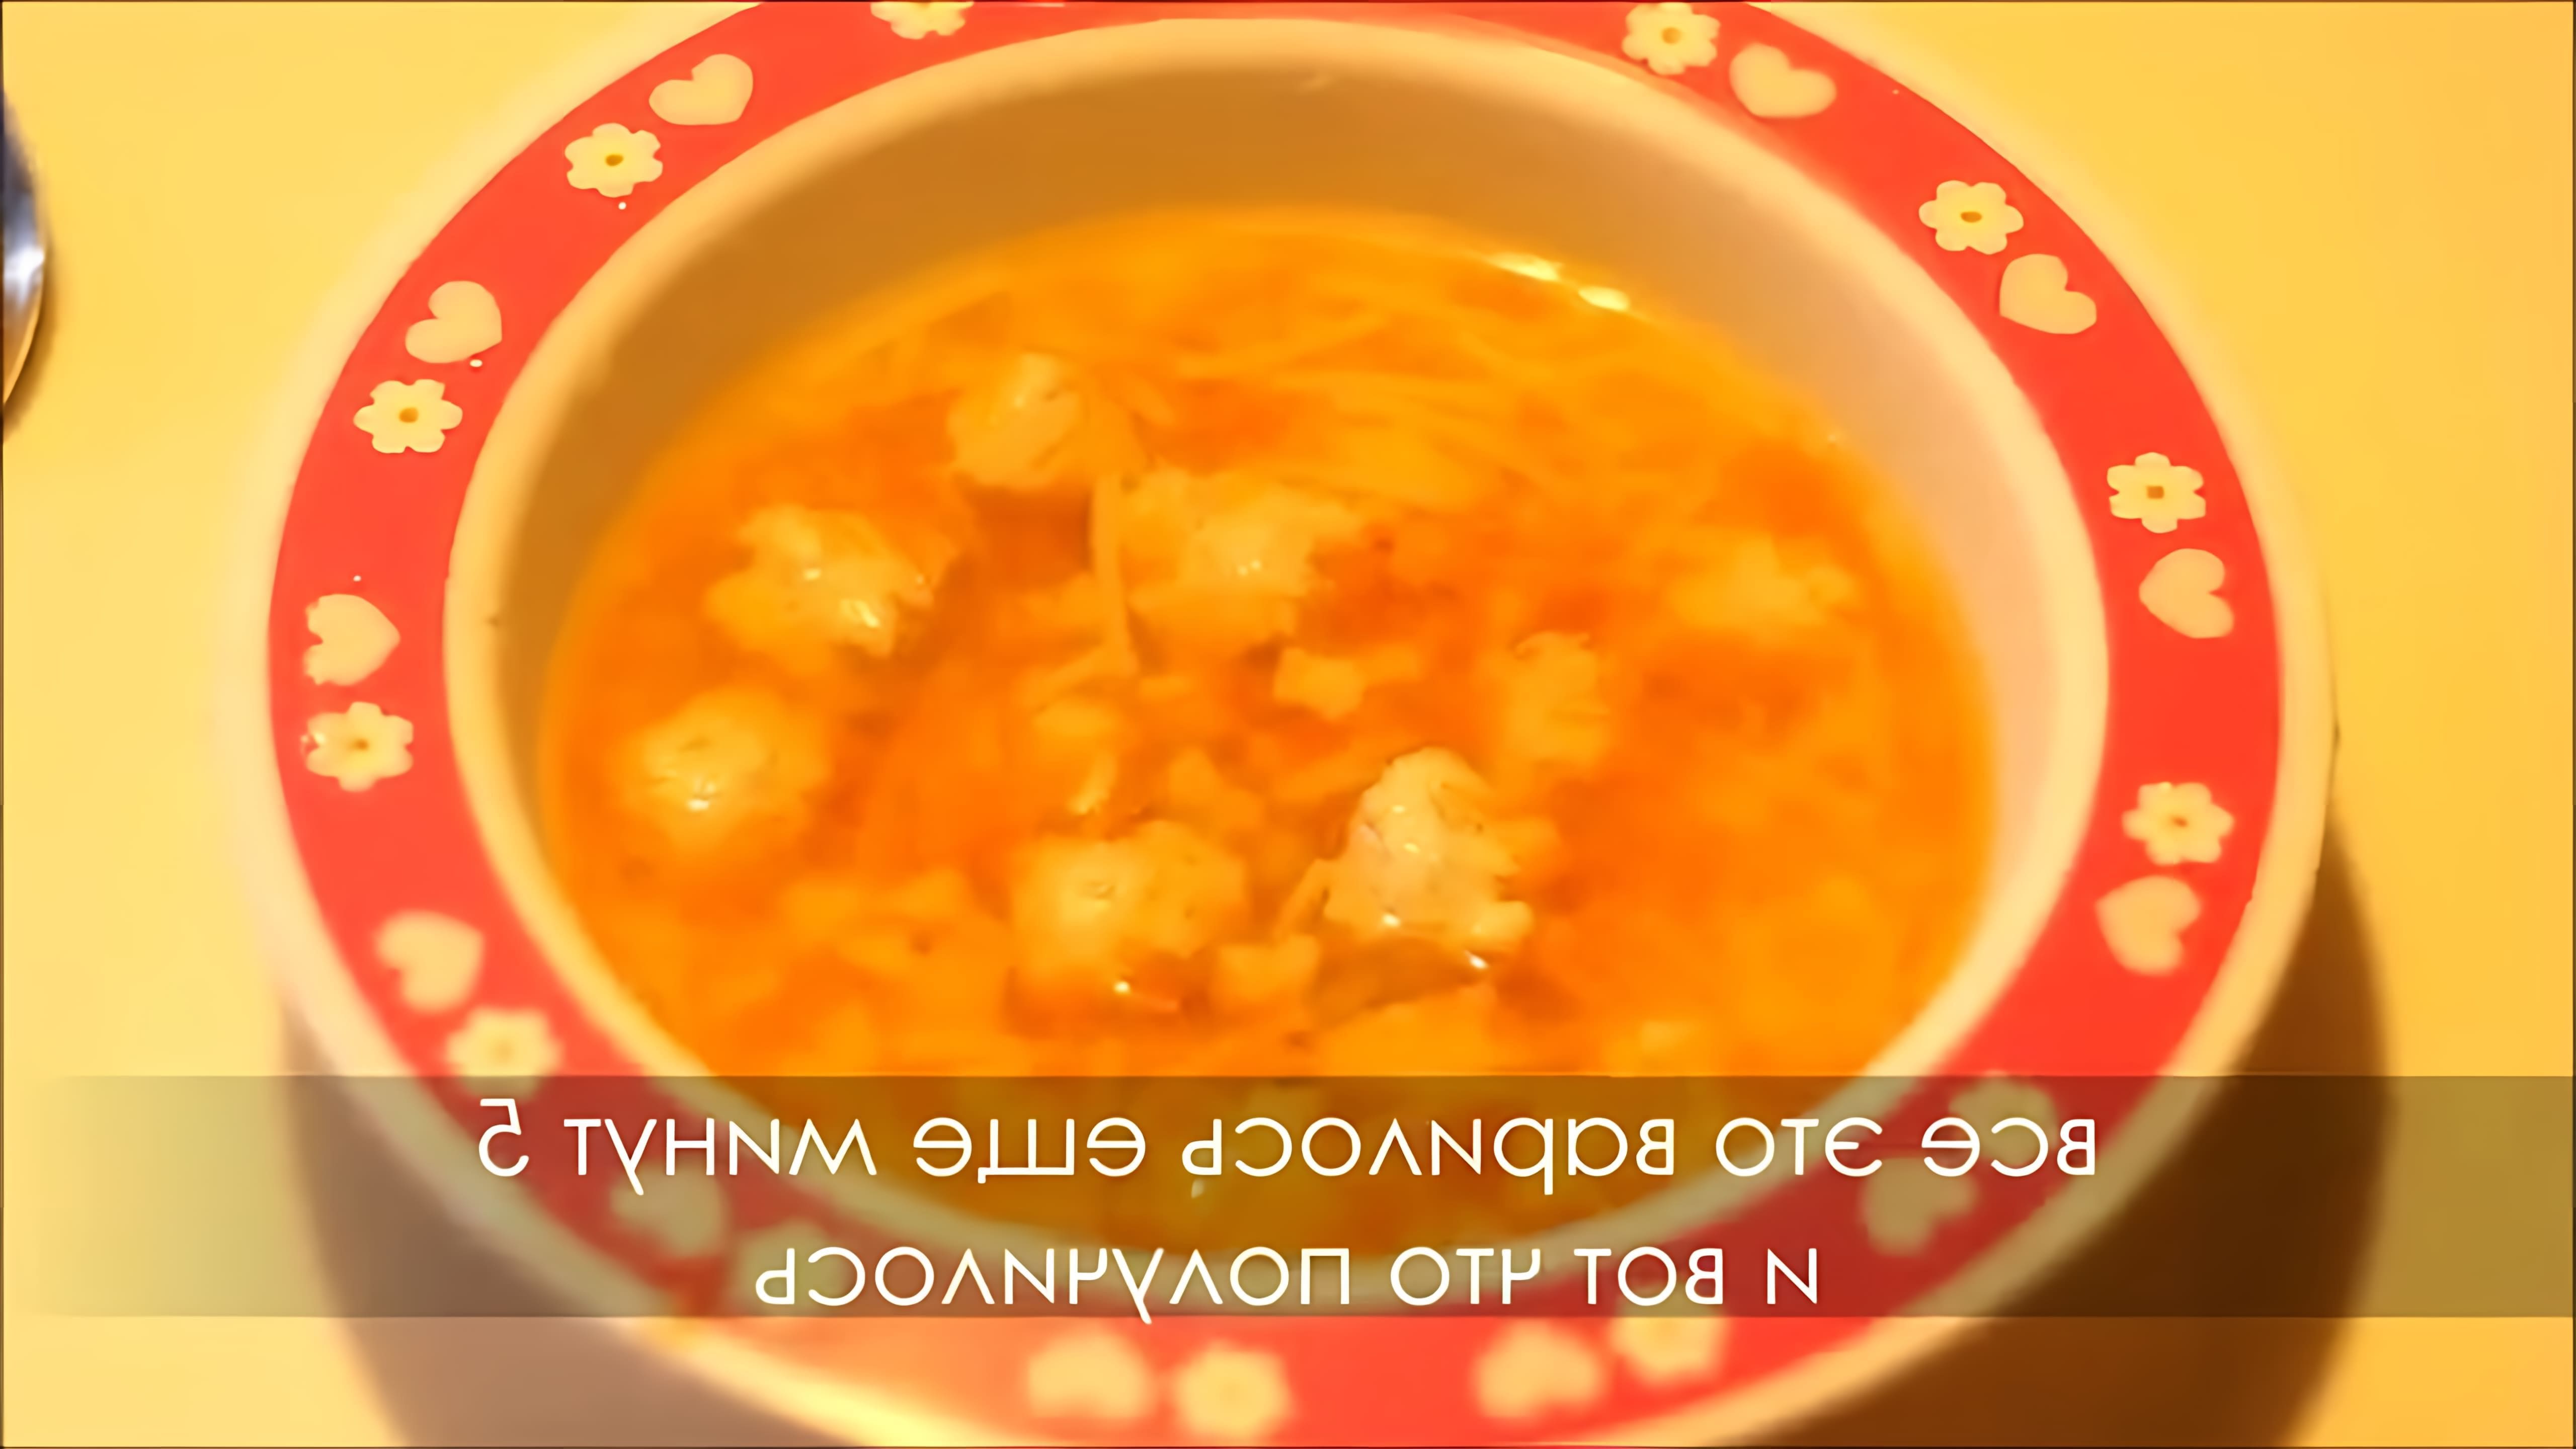 В этом видео-ролике мы увидим рецепт детского супа с куриными фрикадельками и лапшой